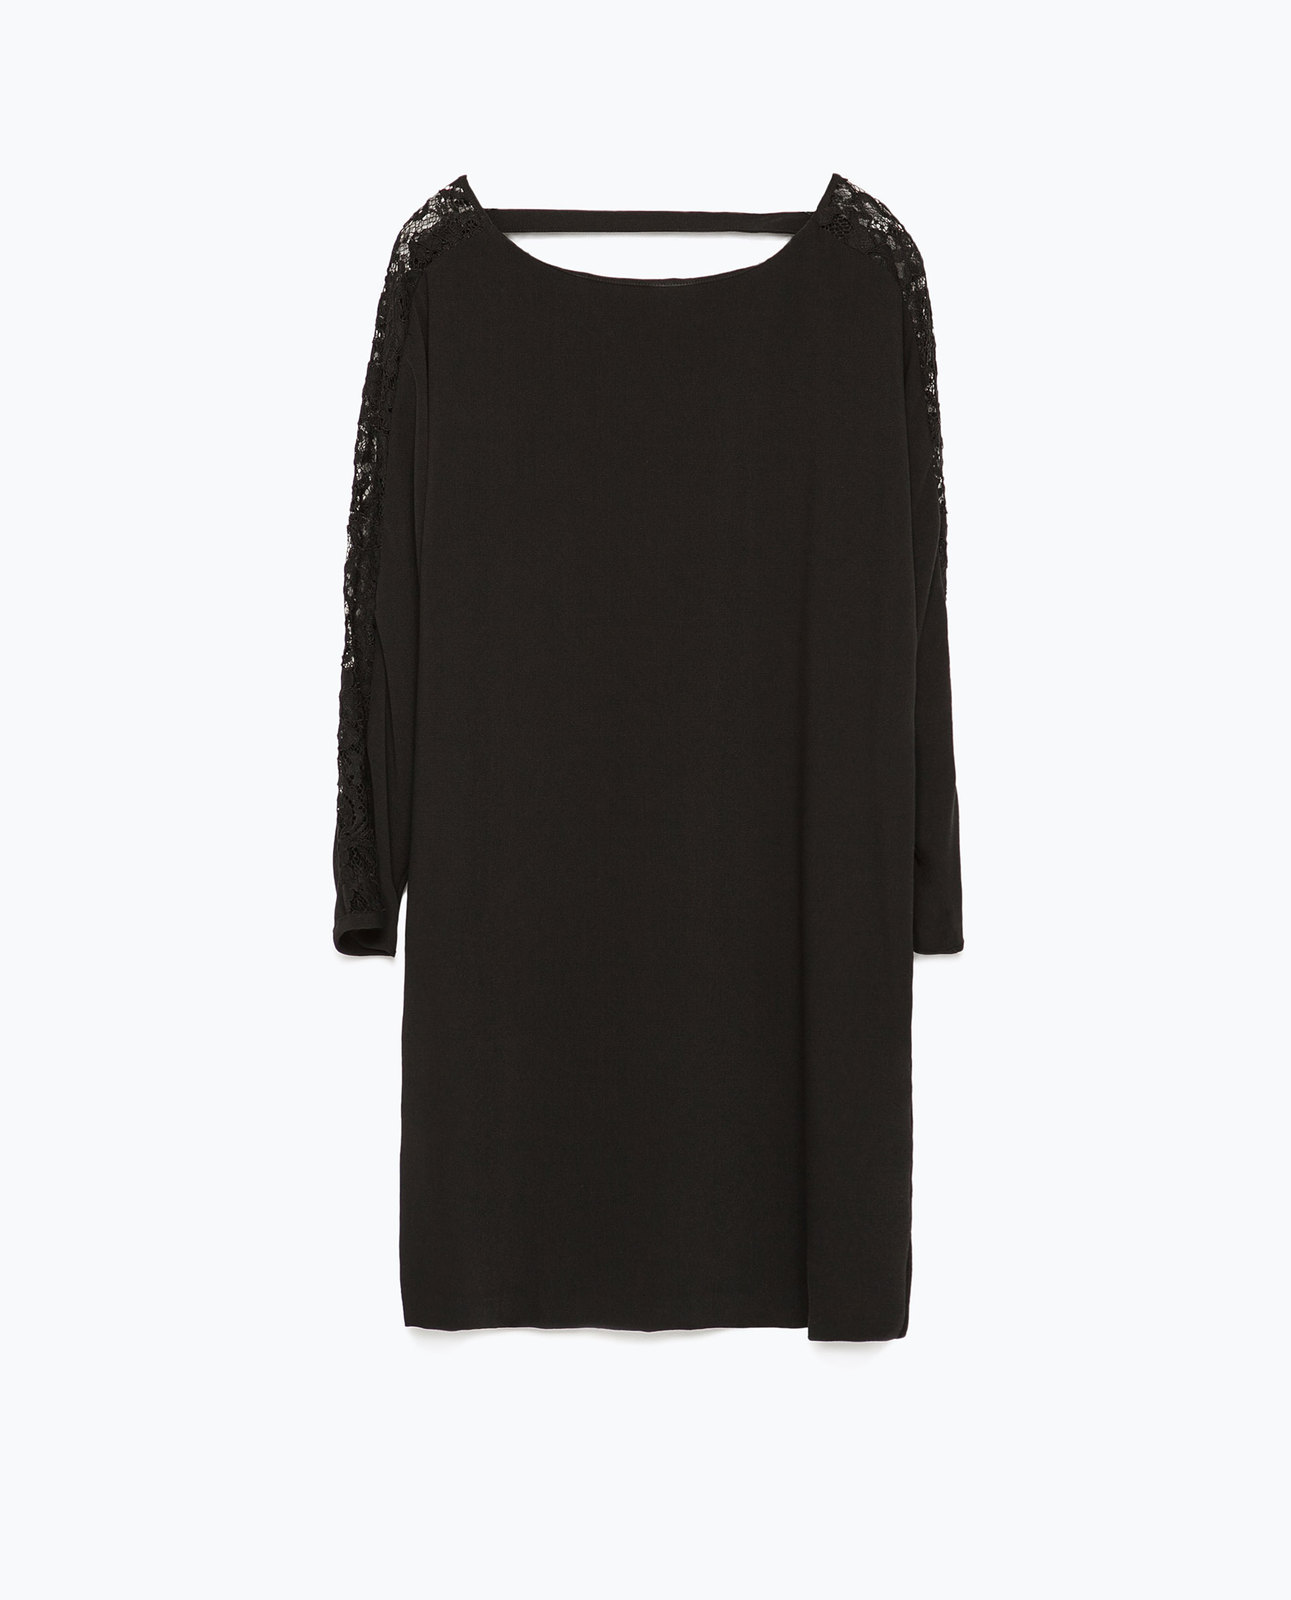 Zara fekete pulóver csipkebetétes ujjal 2015.02.23 #74545 fotója